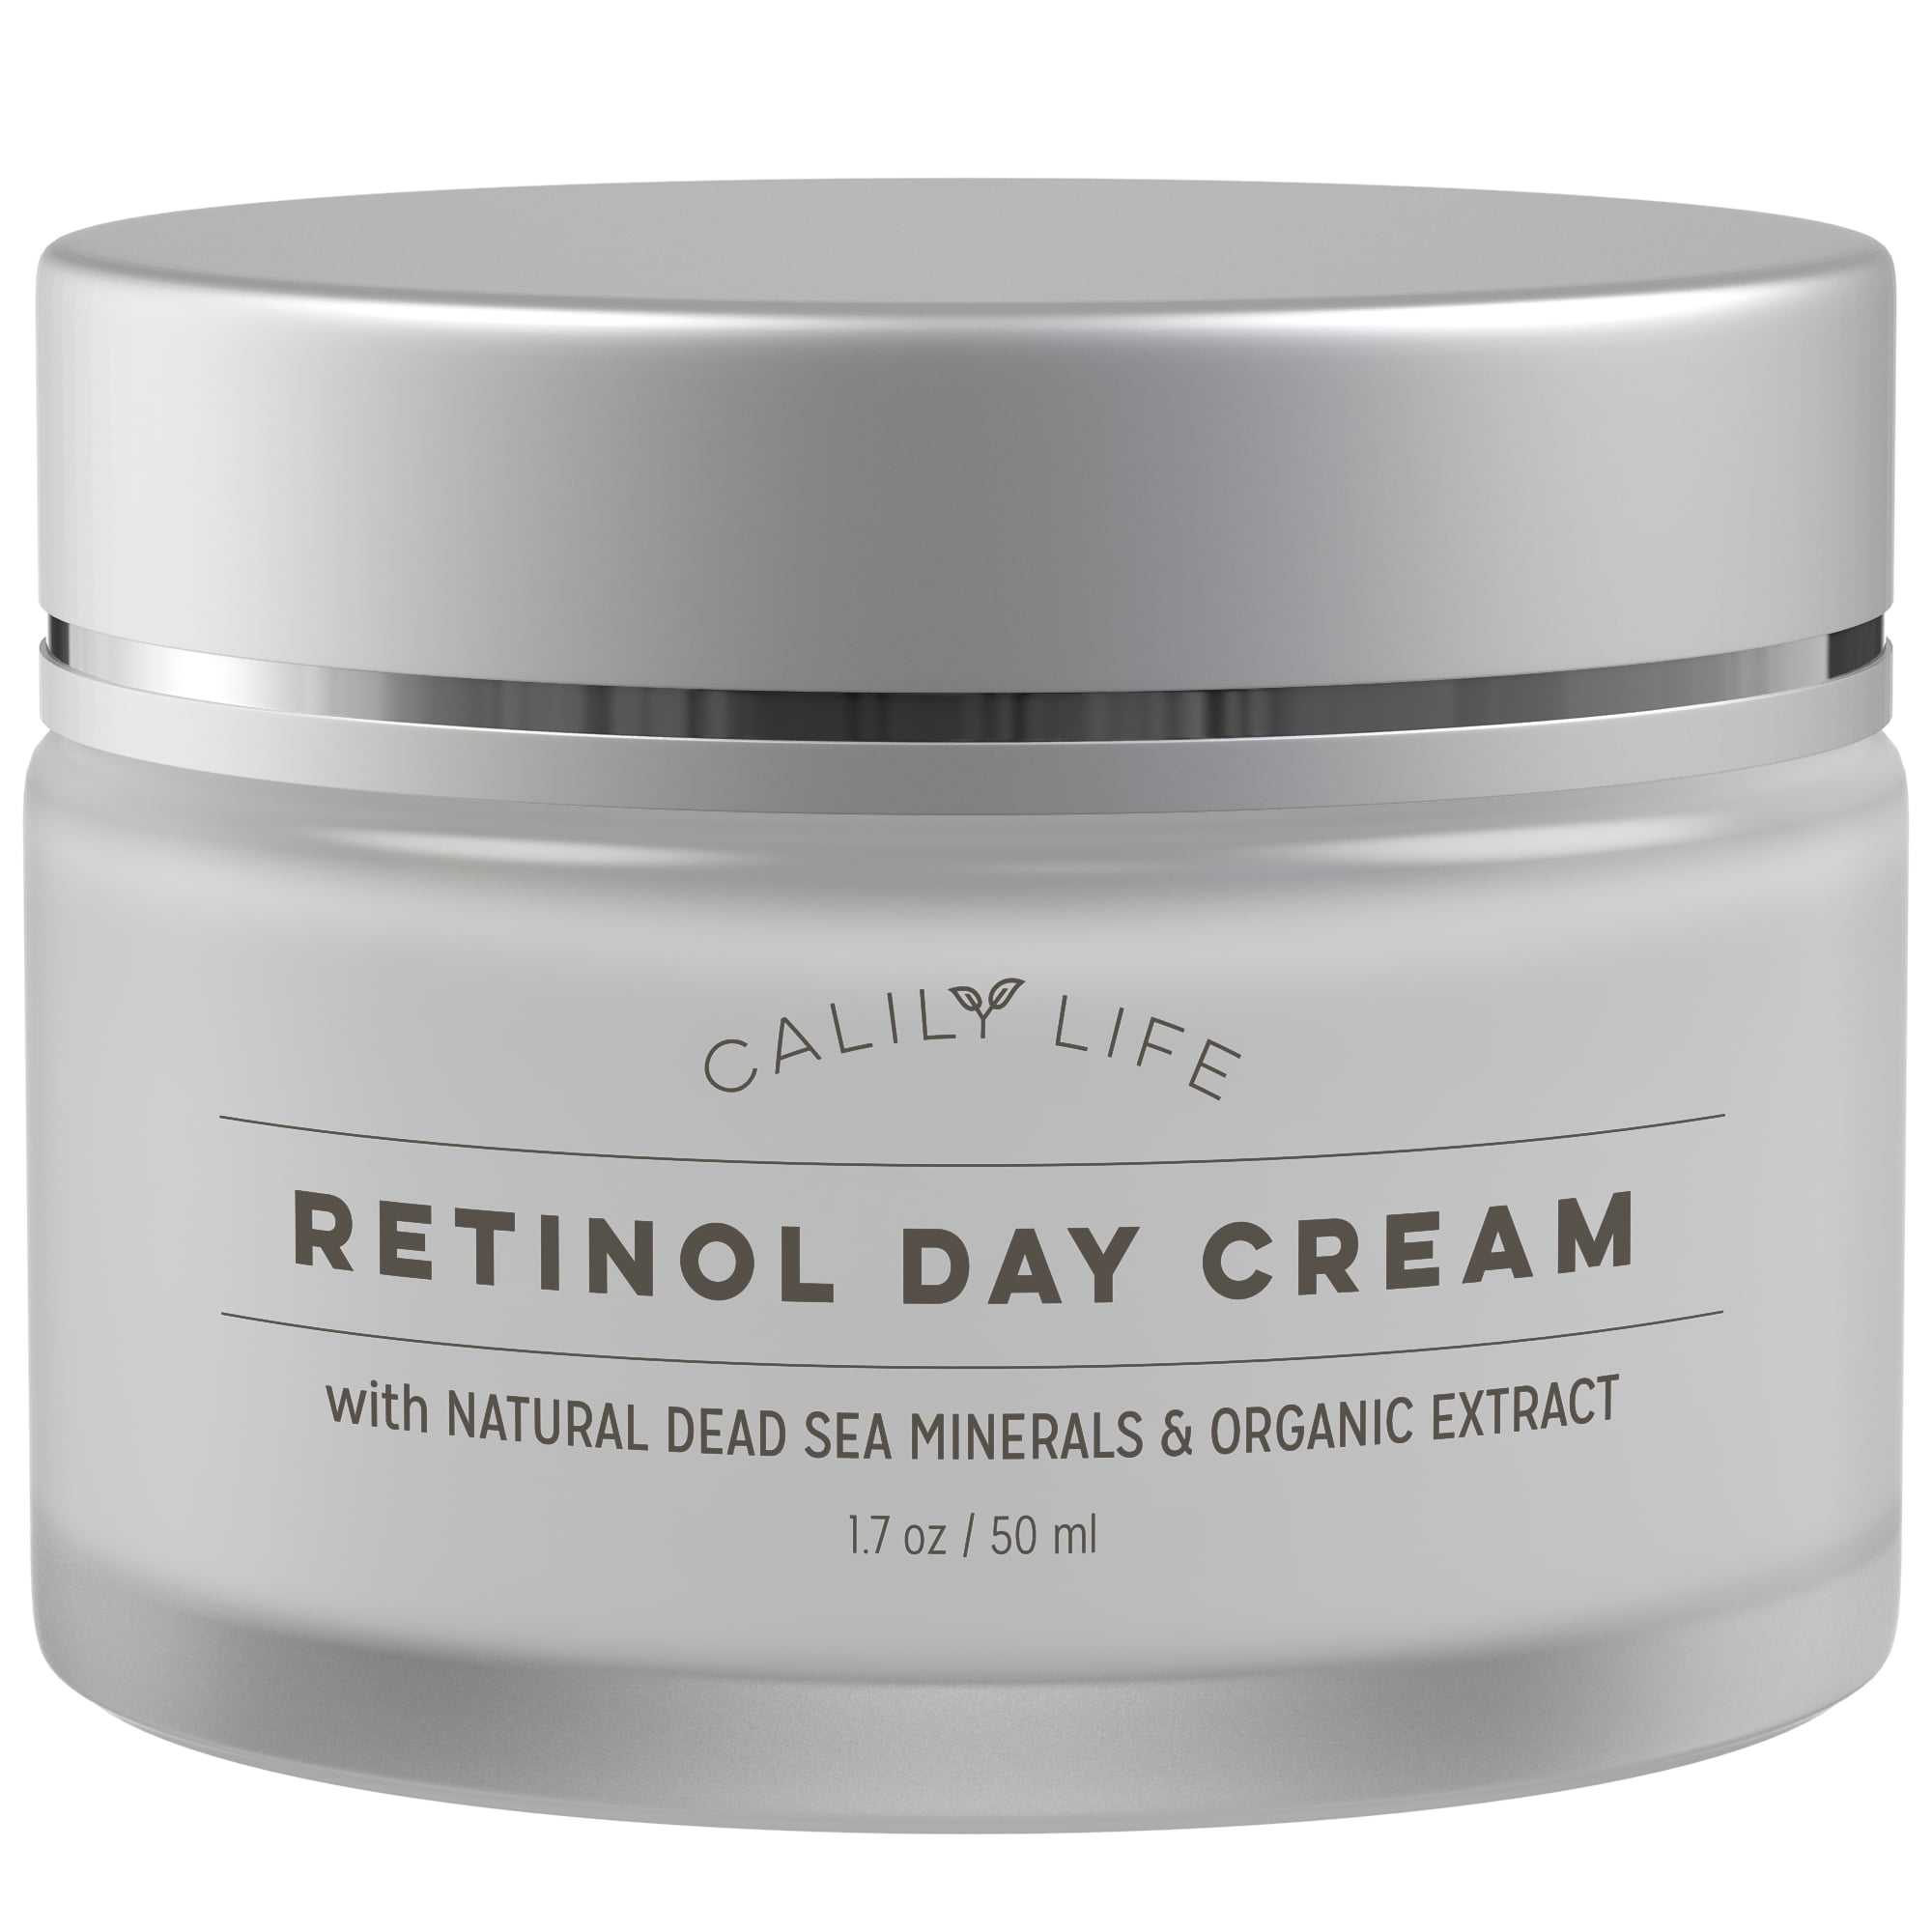 Calilylife Organic Anti Aging Retinol Day Cream With Dead Sea Minerals 1 7 Oz Non Greasy Fast